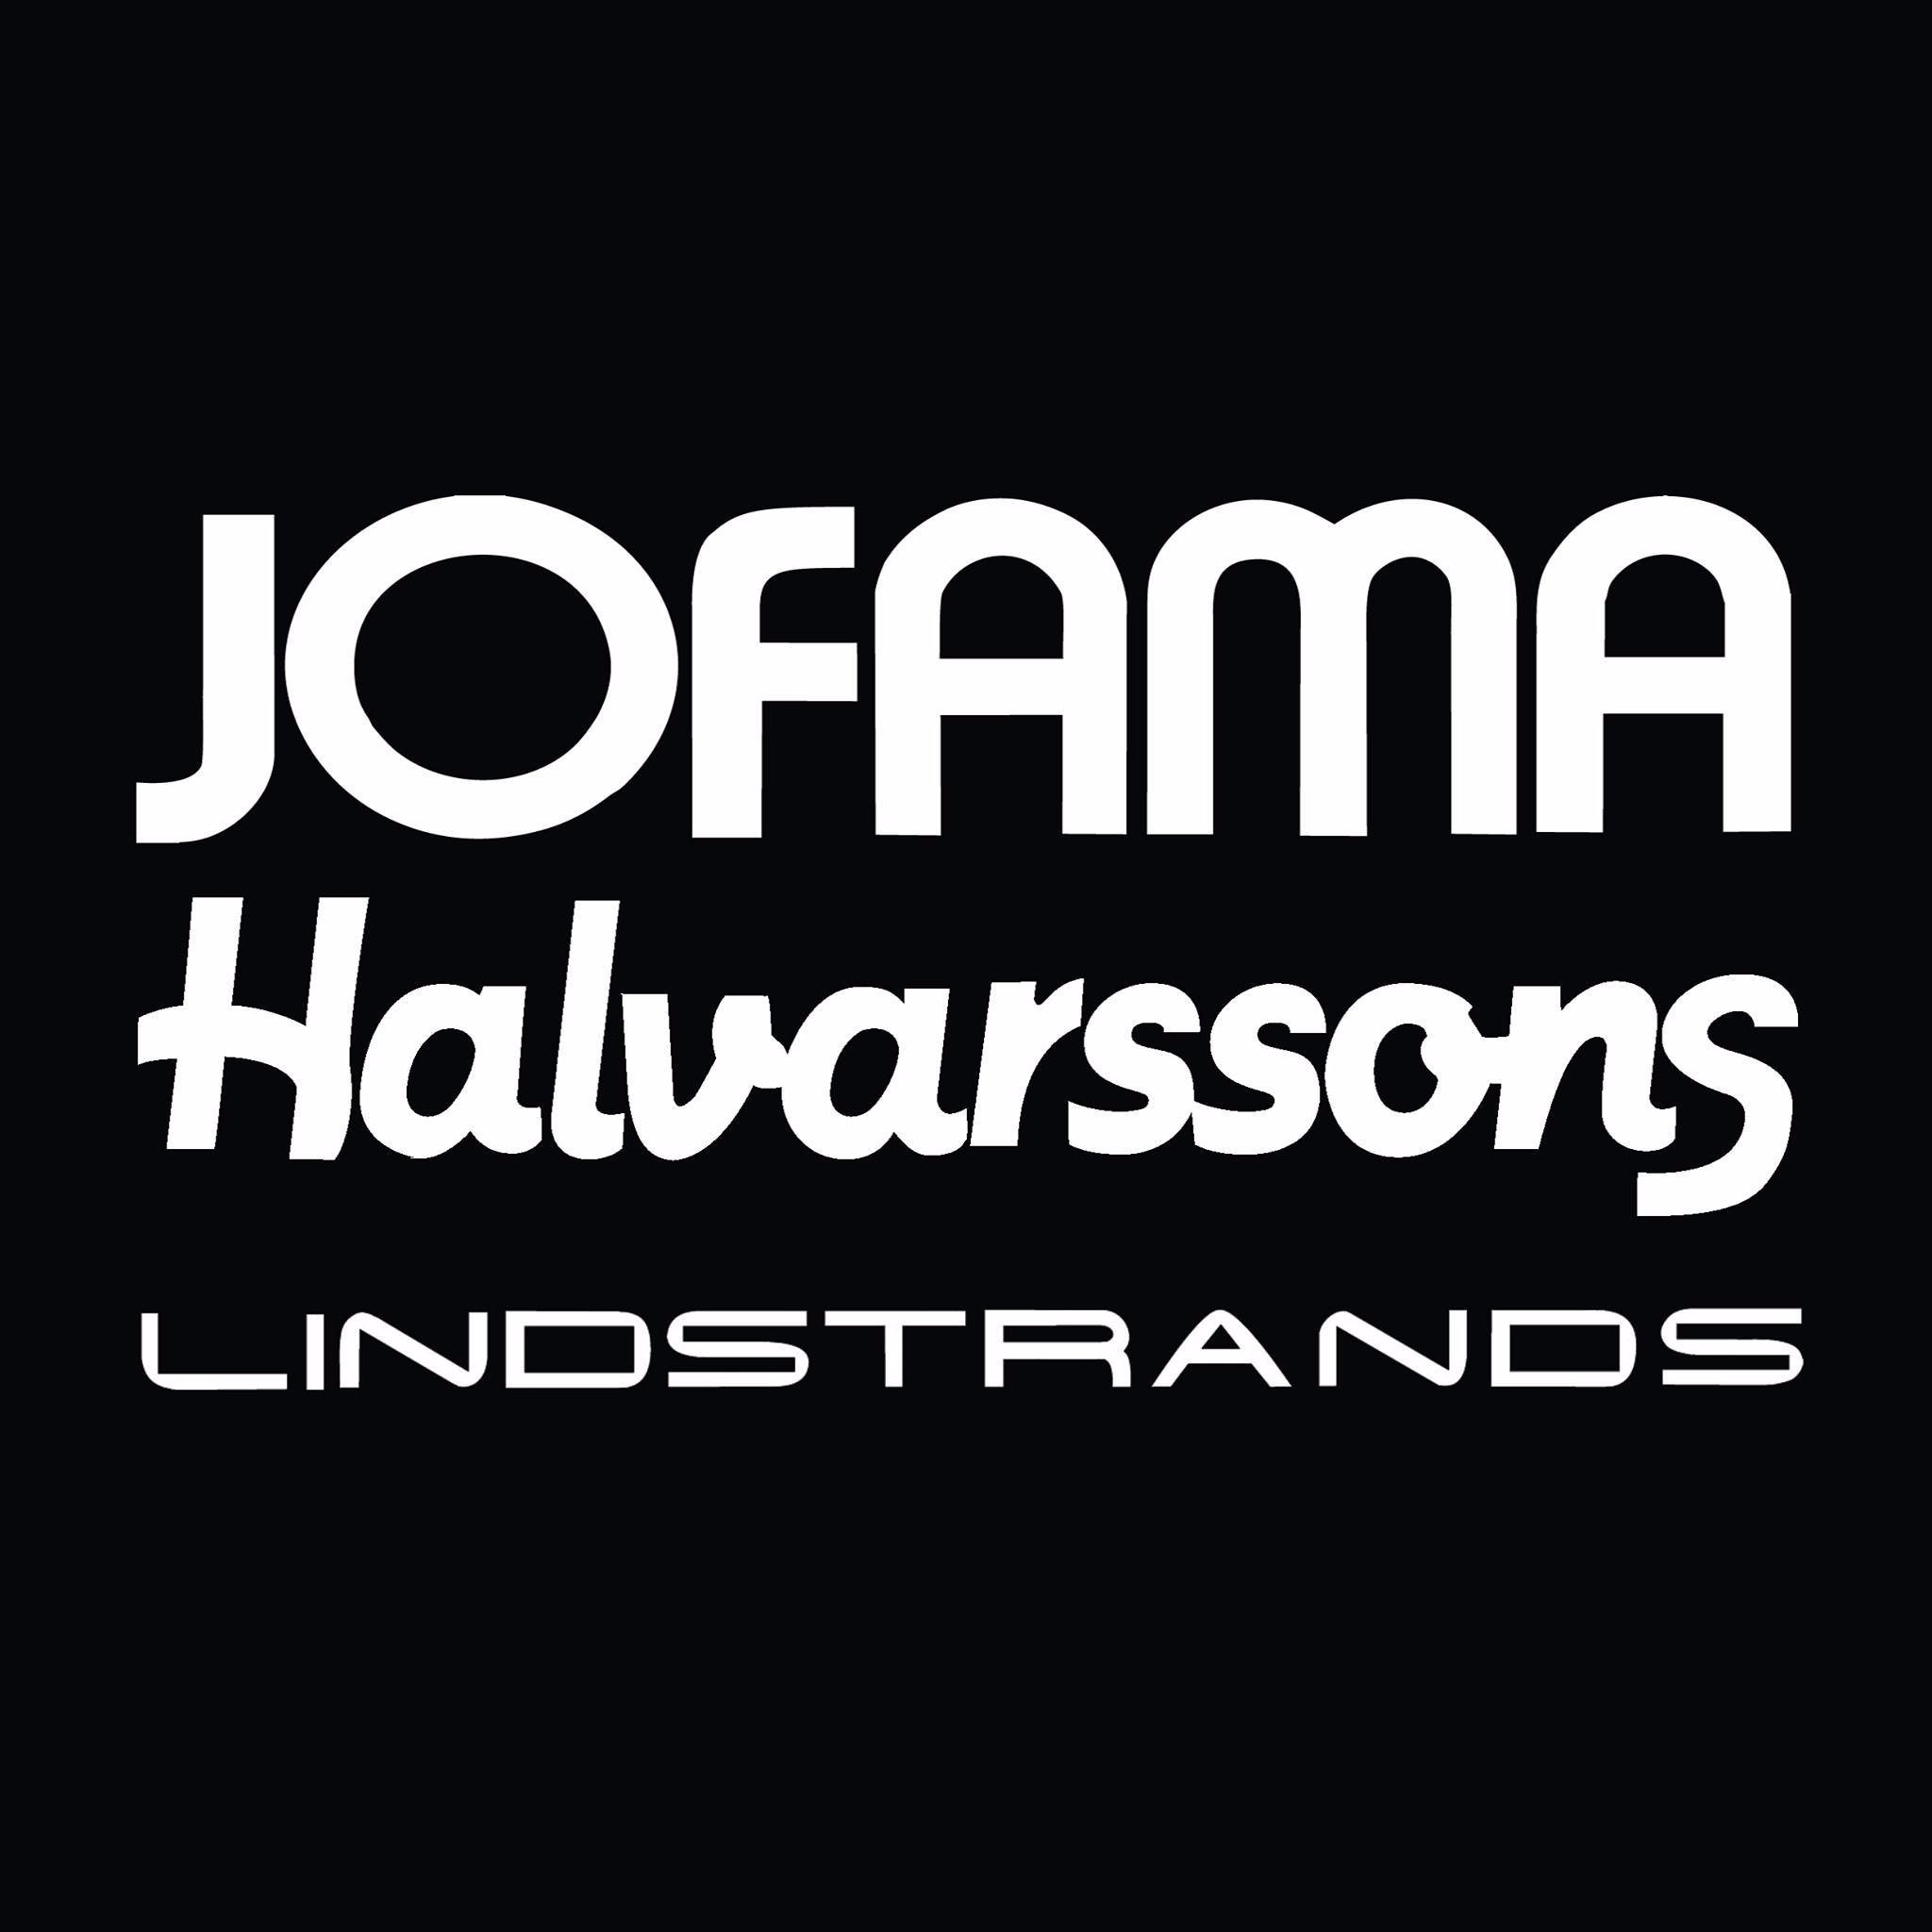 Oblečení Halvarssons a Lindstrands